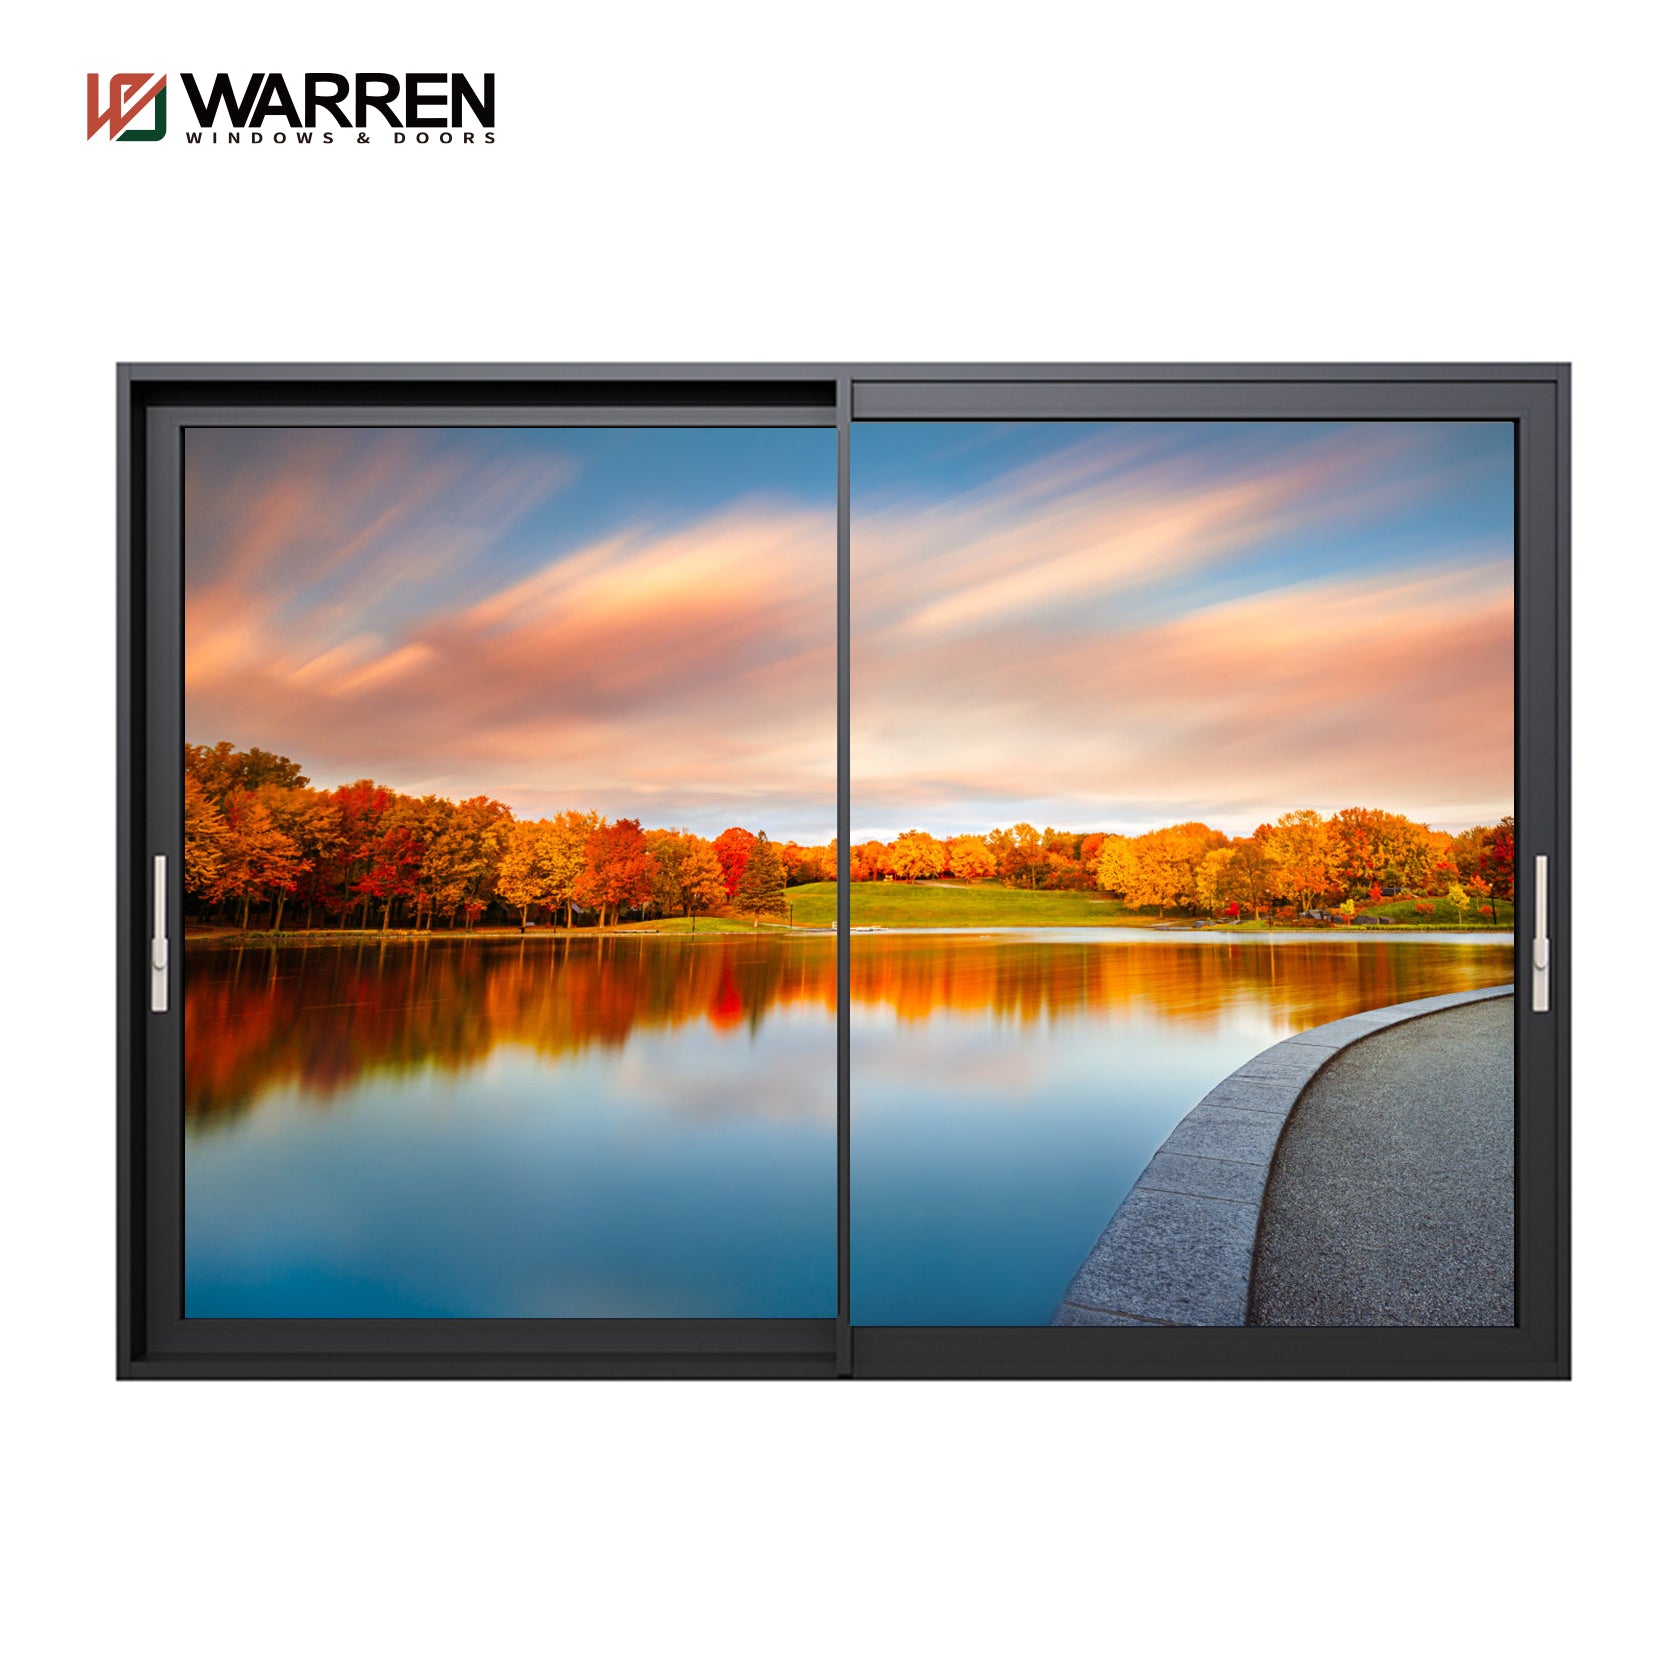 Warren House Exterior Thermal Break Aluminium Profiles Glass Window And Door Heavy Duty Patio Sliding Doors